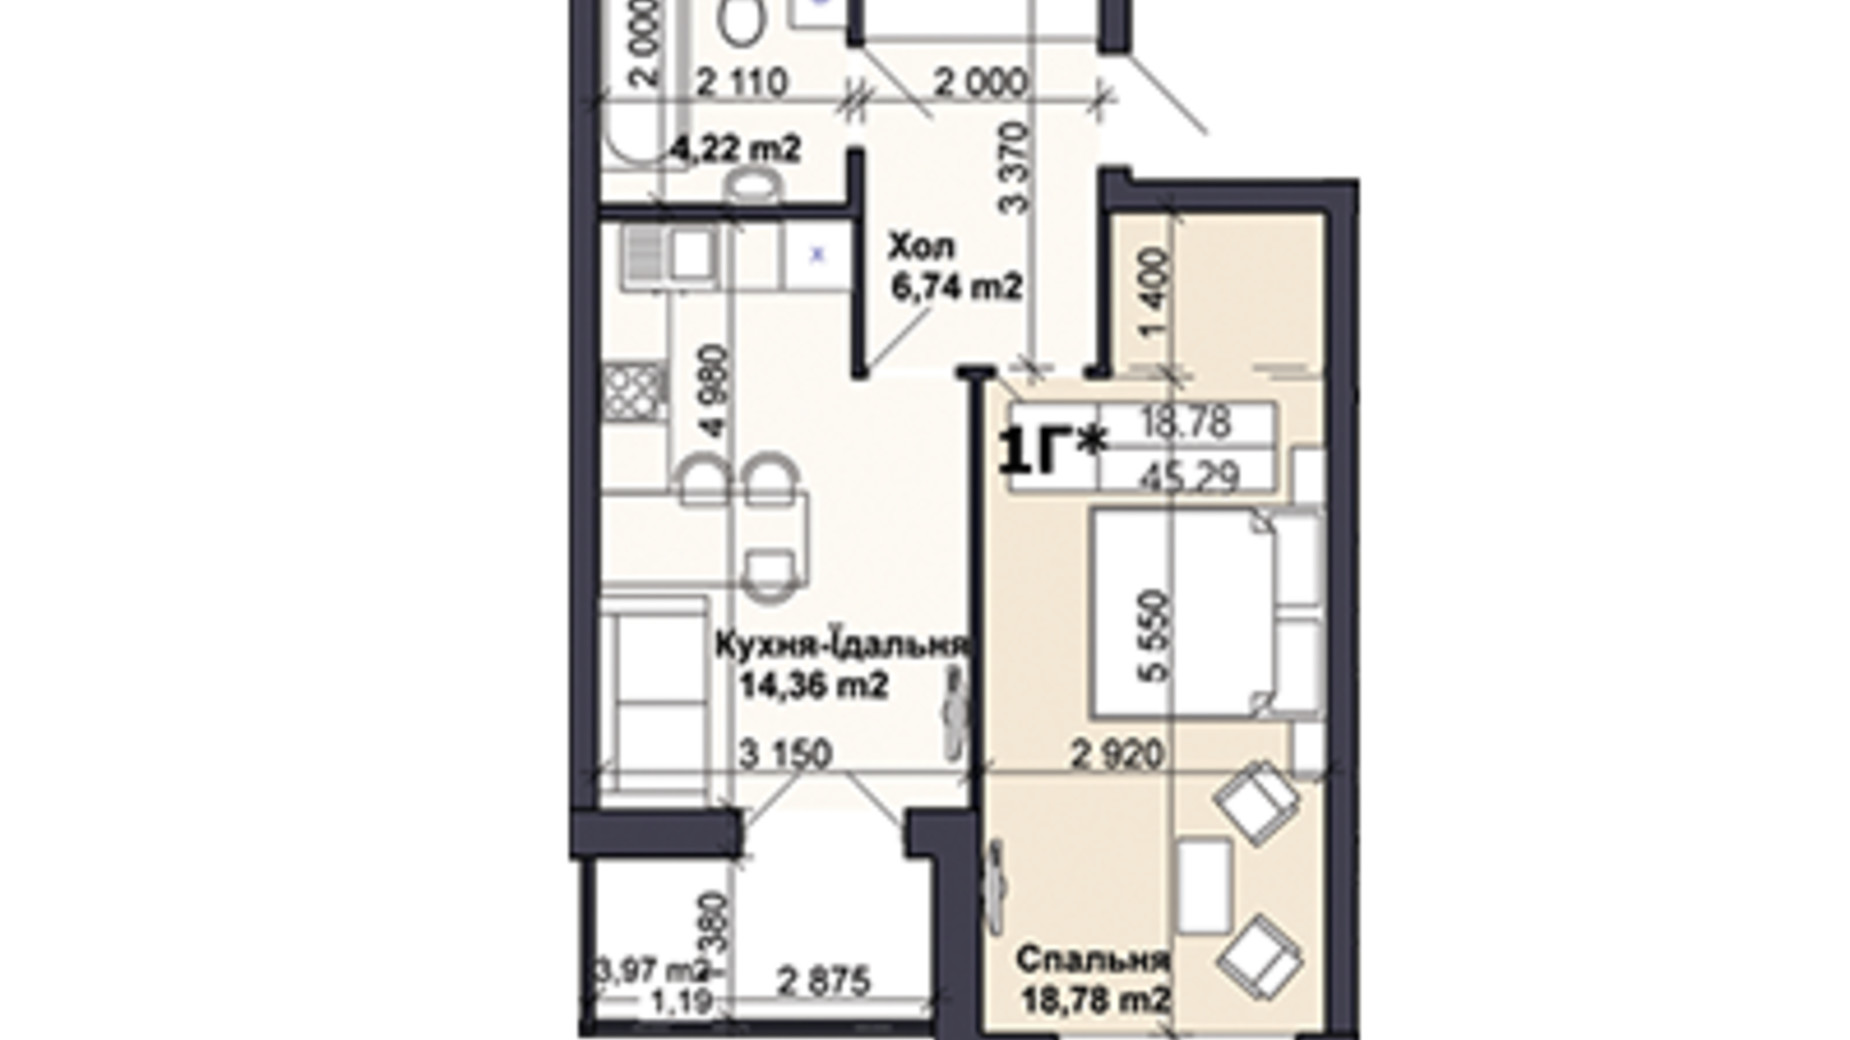 Планировка 1-комнатной квартиры в ЖК Саме той 45.29 м², фото 585423